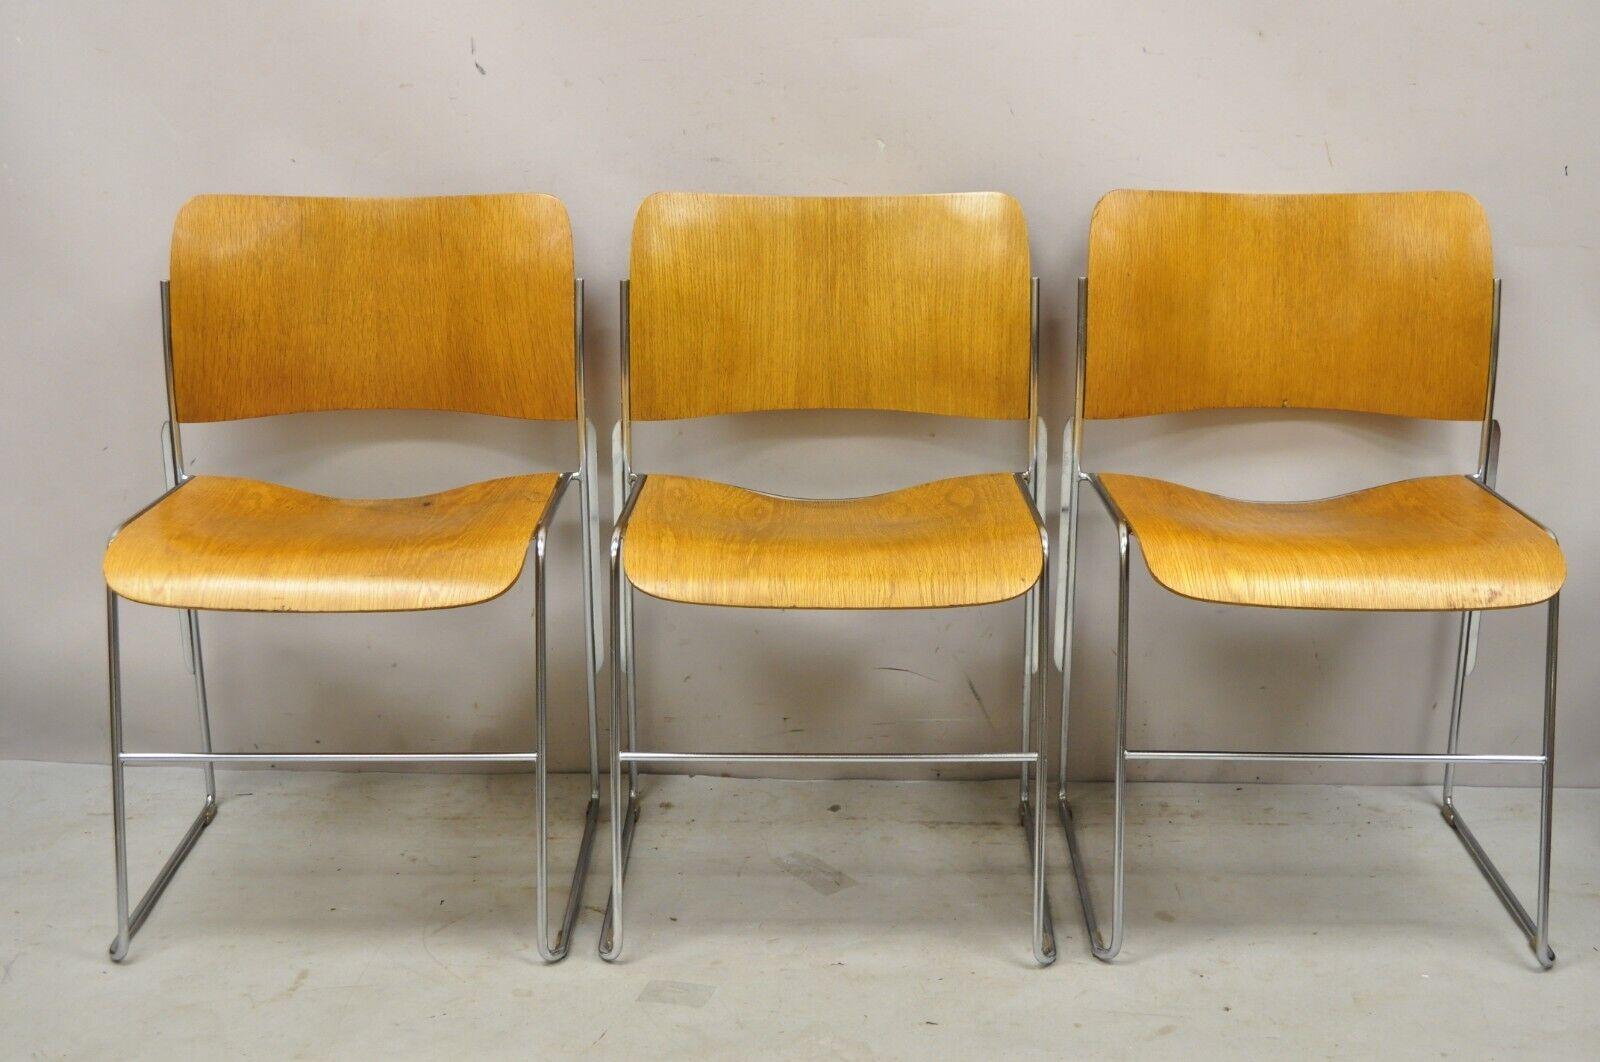 David Rowland 40/4 Bugholz Chromrahmen stapeln Stühle - Satz von 3. Artikel verfügt über Bugholz zurück und Sitze, Chrom Metallrahmen, Stapeln Form, (3) Stühle, original Etiketten. ca. 1970er Jahre. Abmessungen: 30